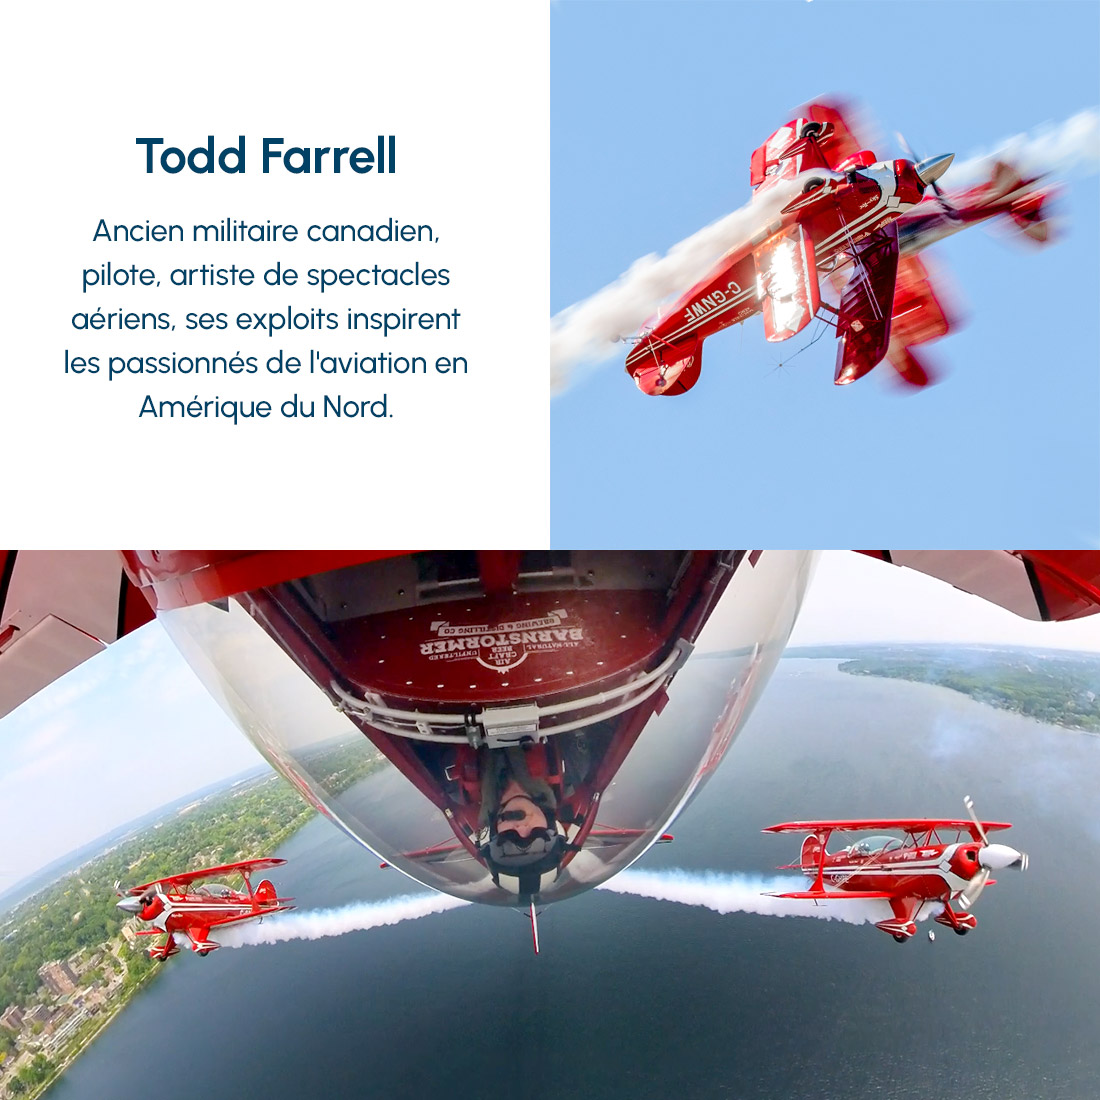 Todd Farrell pilote d’avion